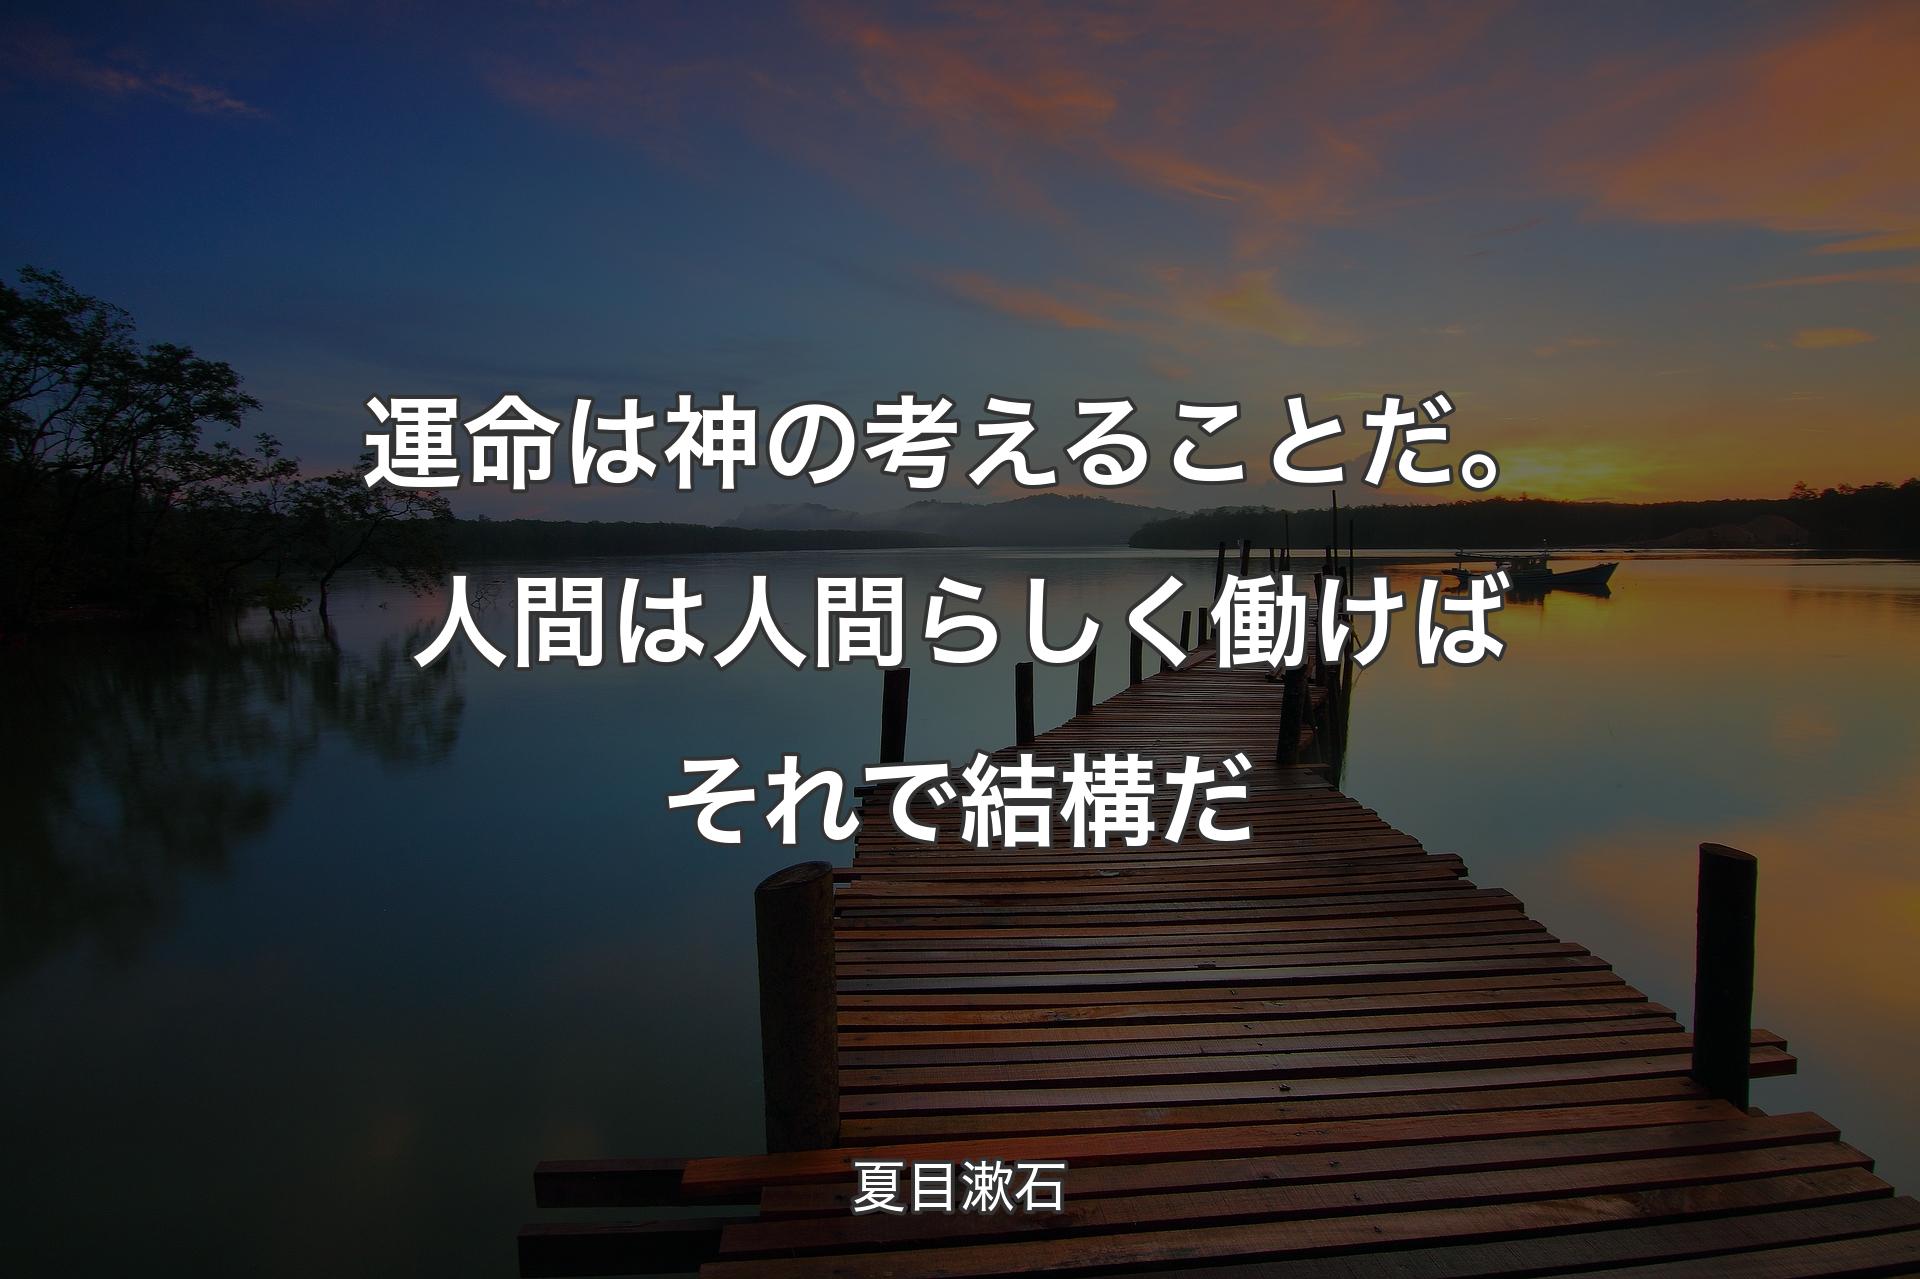 【背景3】運命は神の考えることだ。 人間は人間らしく働けば それで結構だ - 夏目漱石